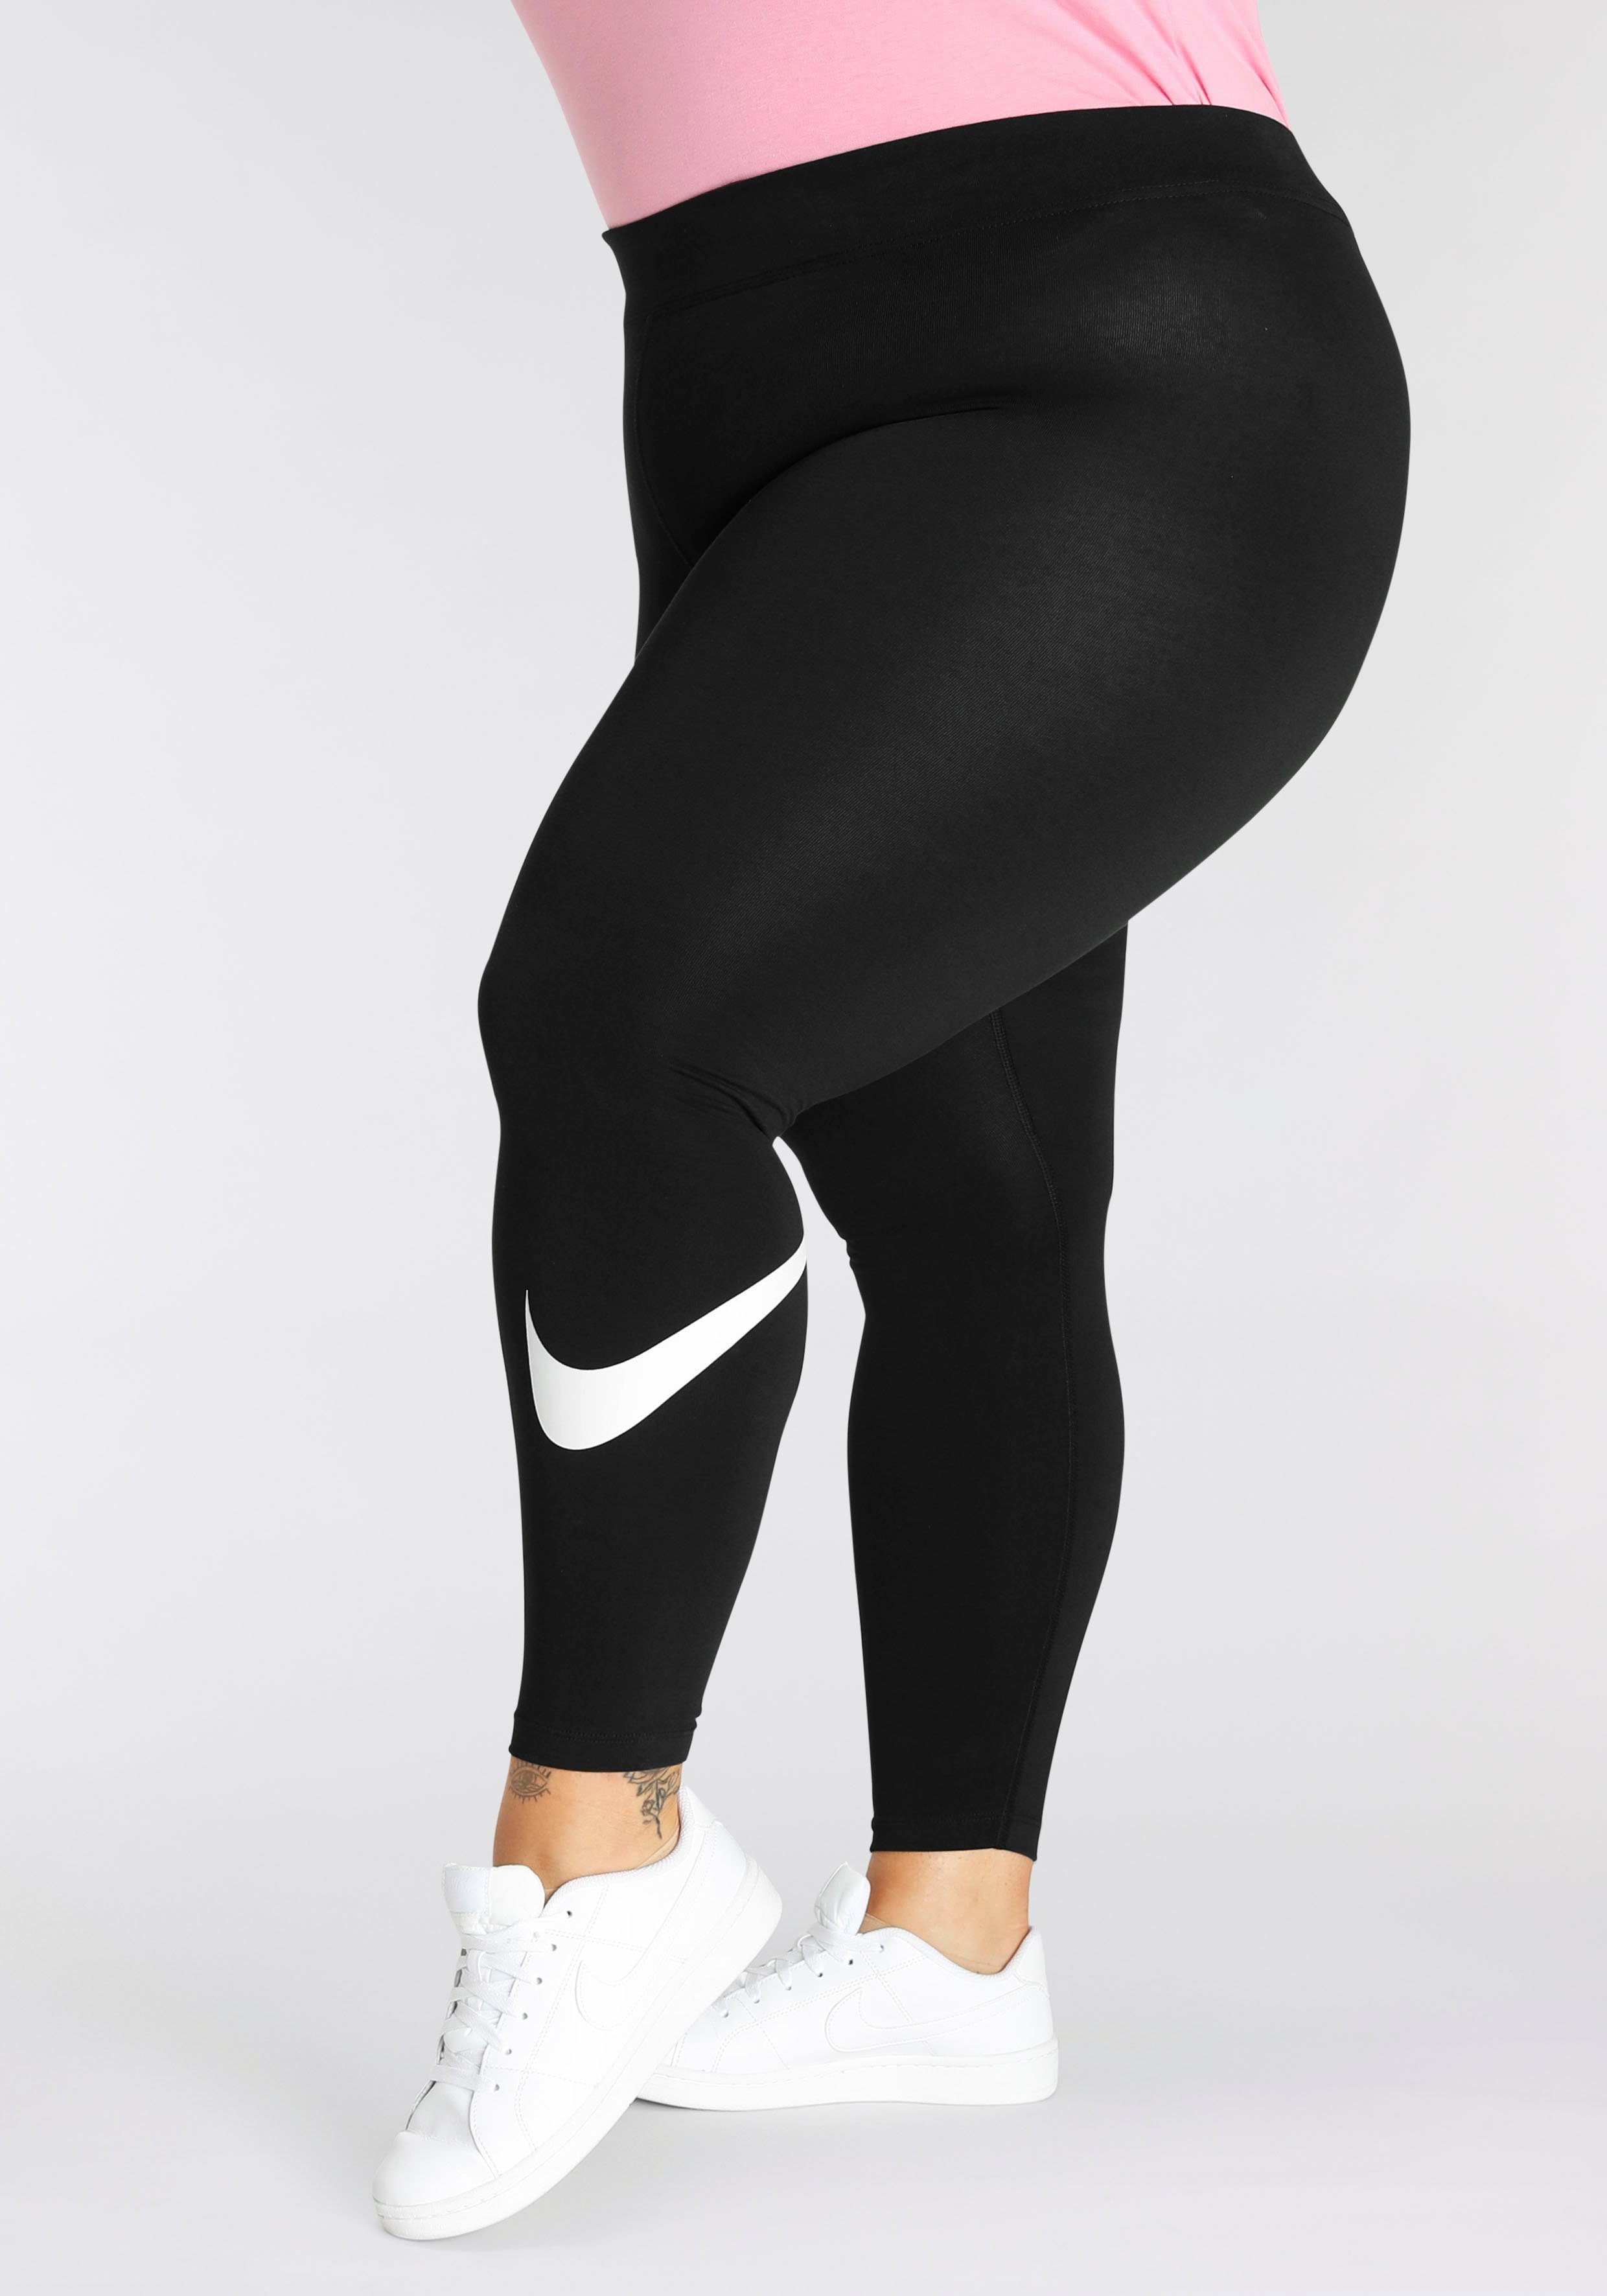 Leggings Sportswear (Plus Mid-Rise Essential Nike Swoosh Size) Women's Leggings